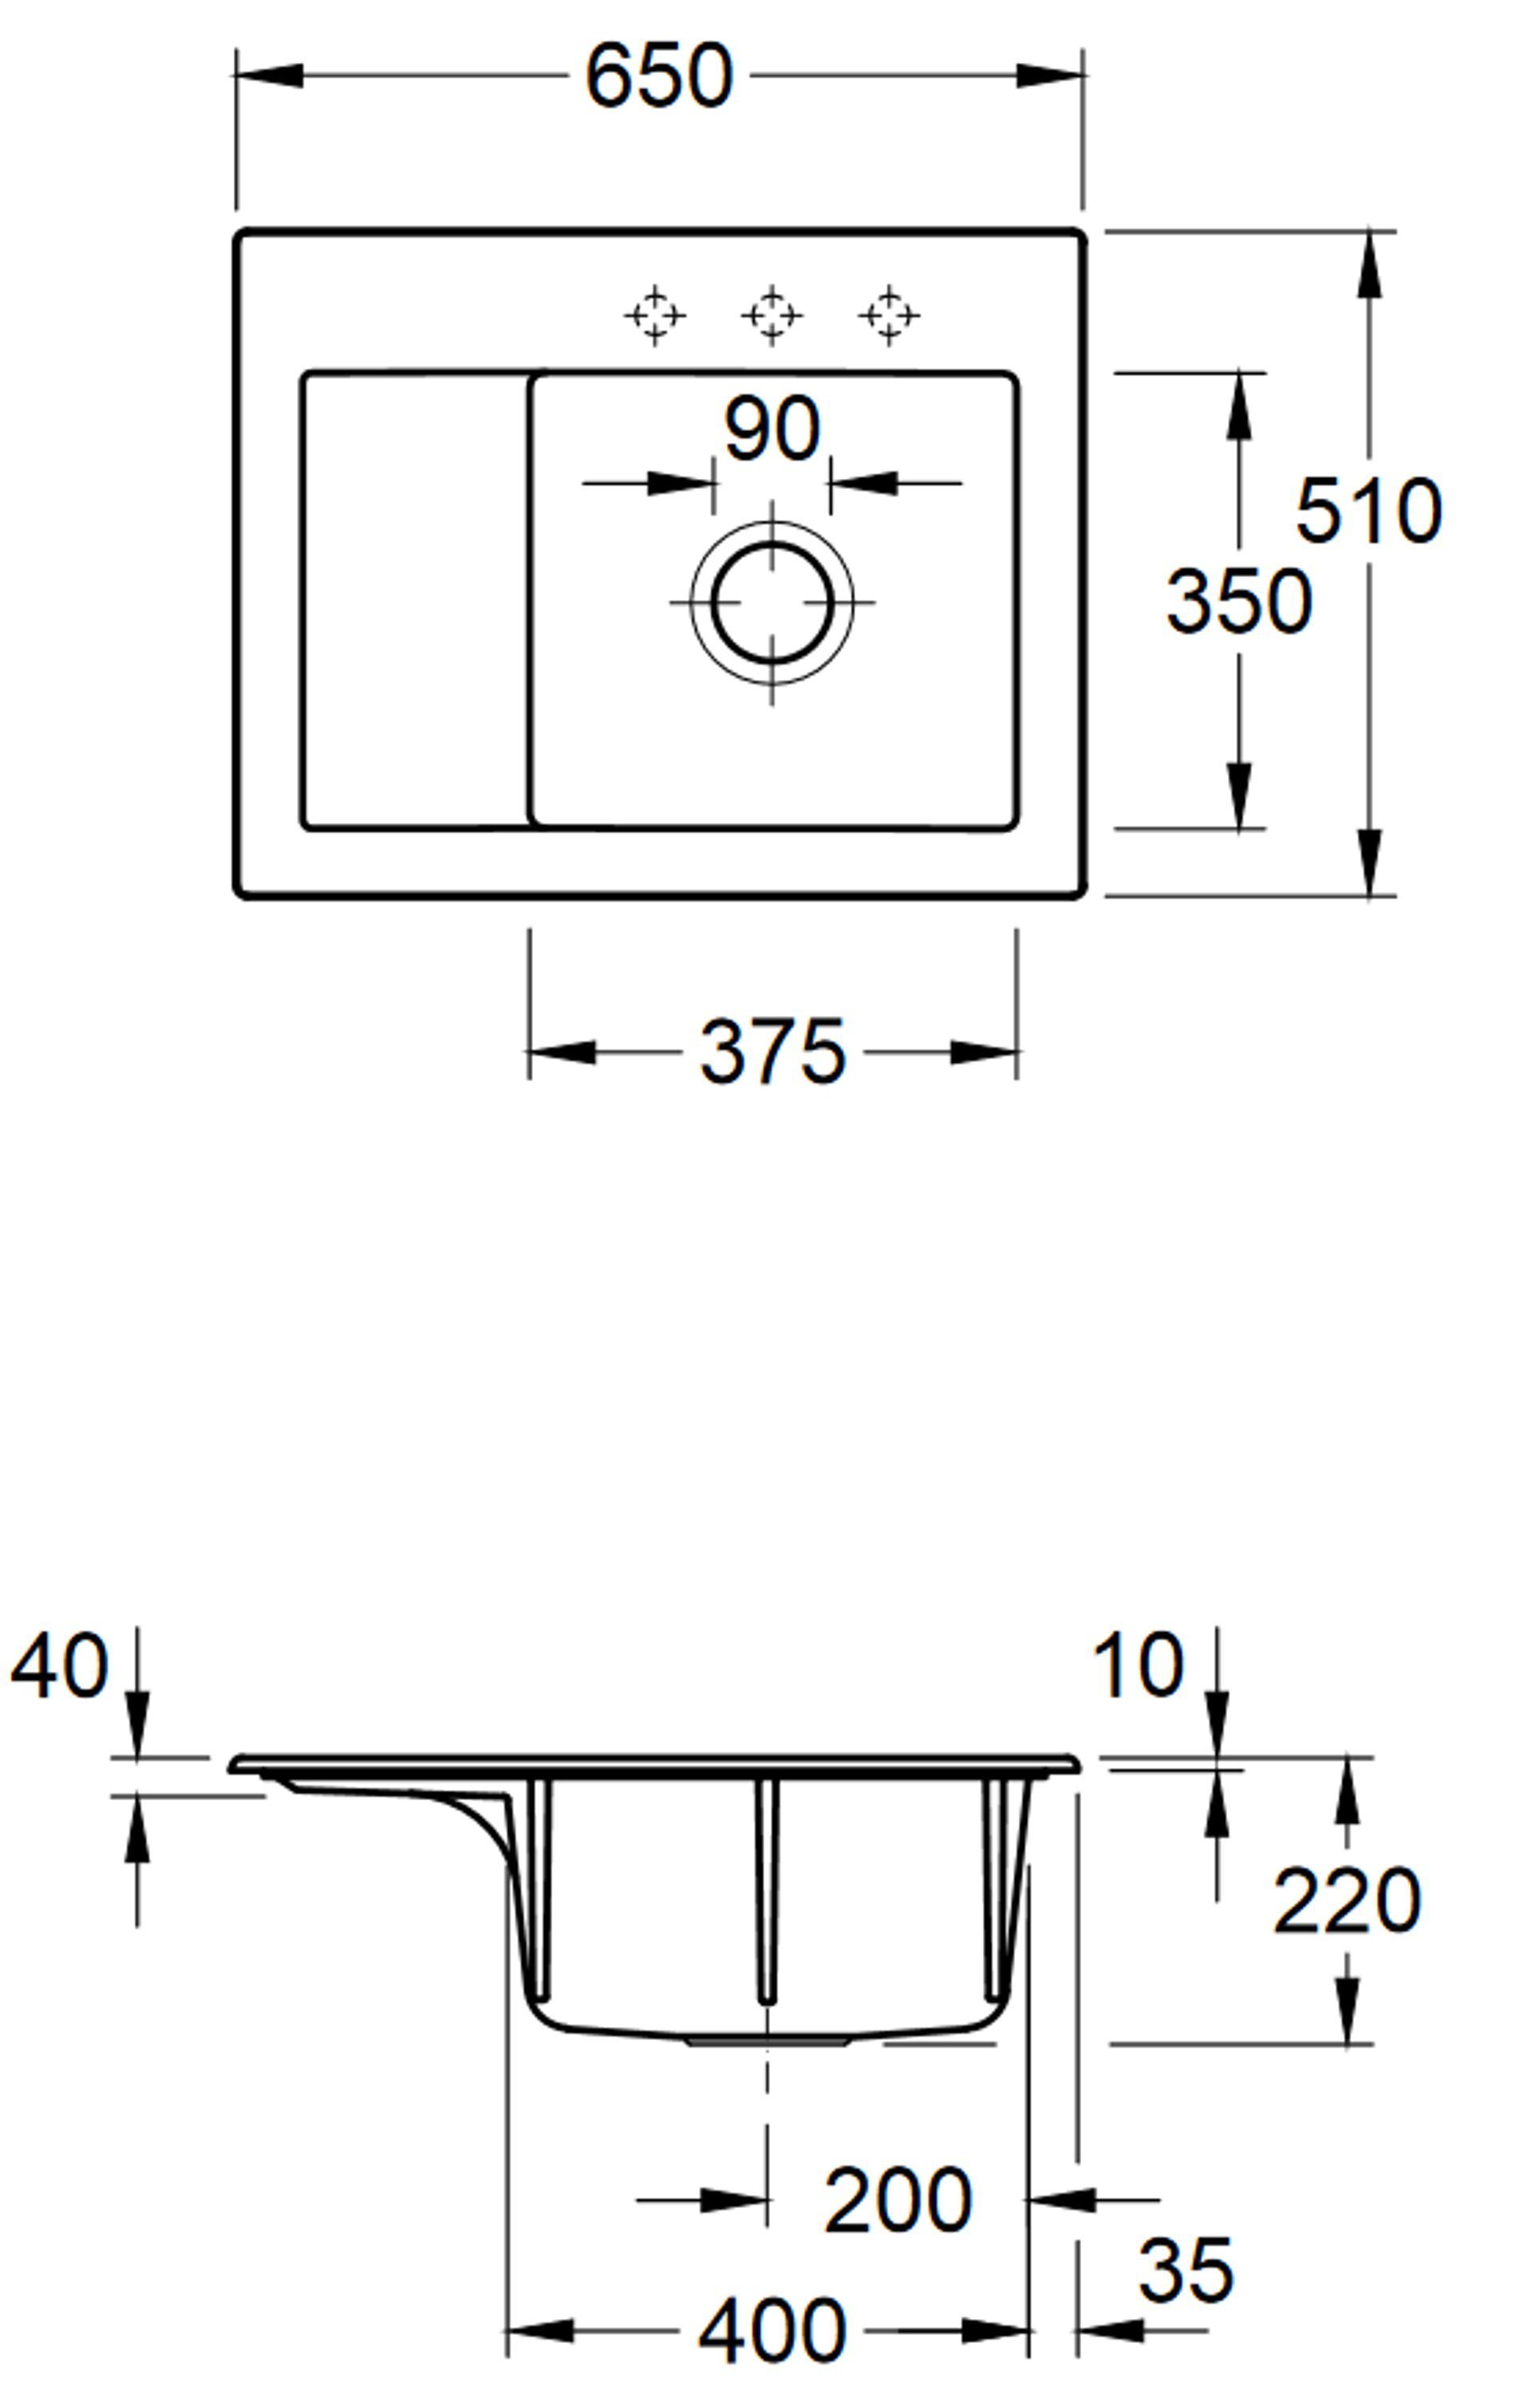 SL, Becken 01 links cm, Villeroy Boch und Küchenspüle Subway möglich Rechteckig, Compact 3313 rechts & Serie, 65/22